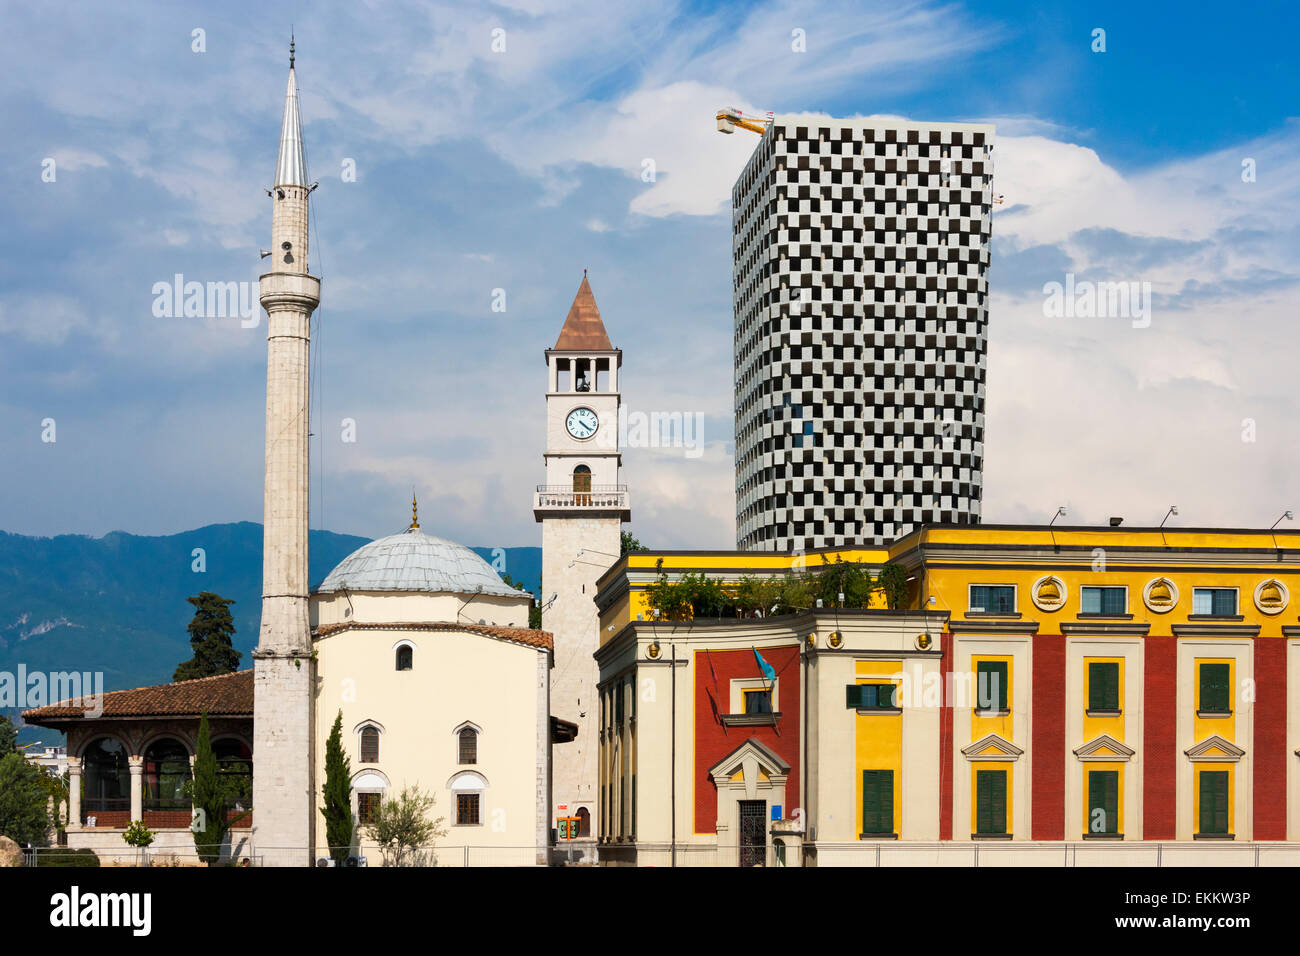 La mosquée Et'hem Bey, Tour de l'horloge, le centre commercial de monnaie italienne logement Department Store et le ministère de la Défense, Tirana, Albanie Banque D'Images